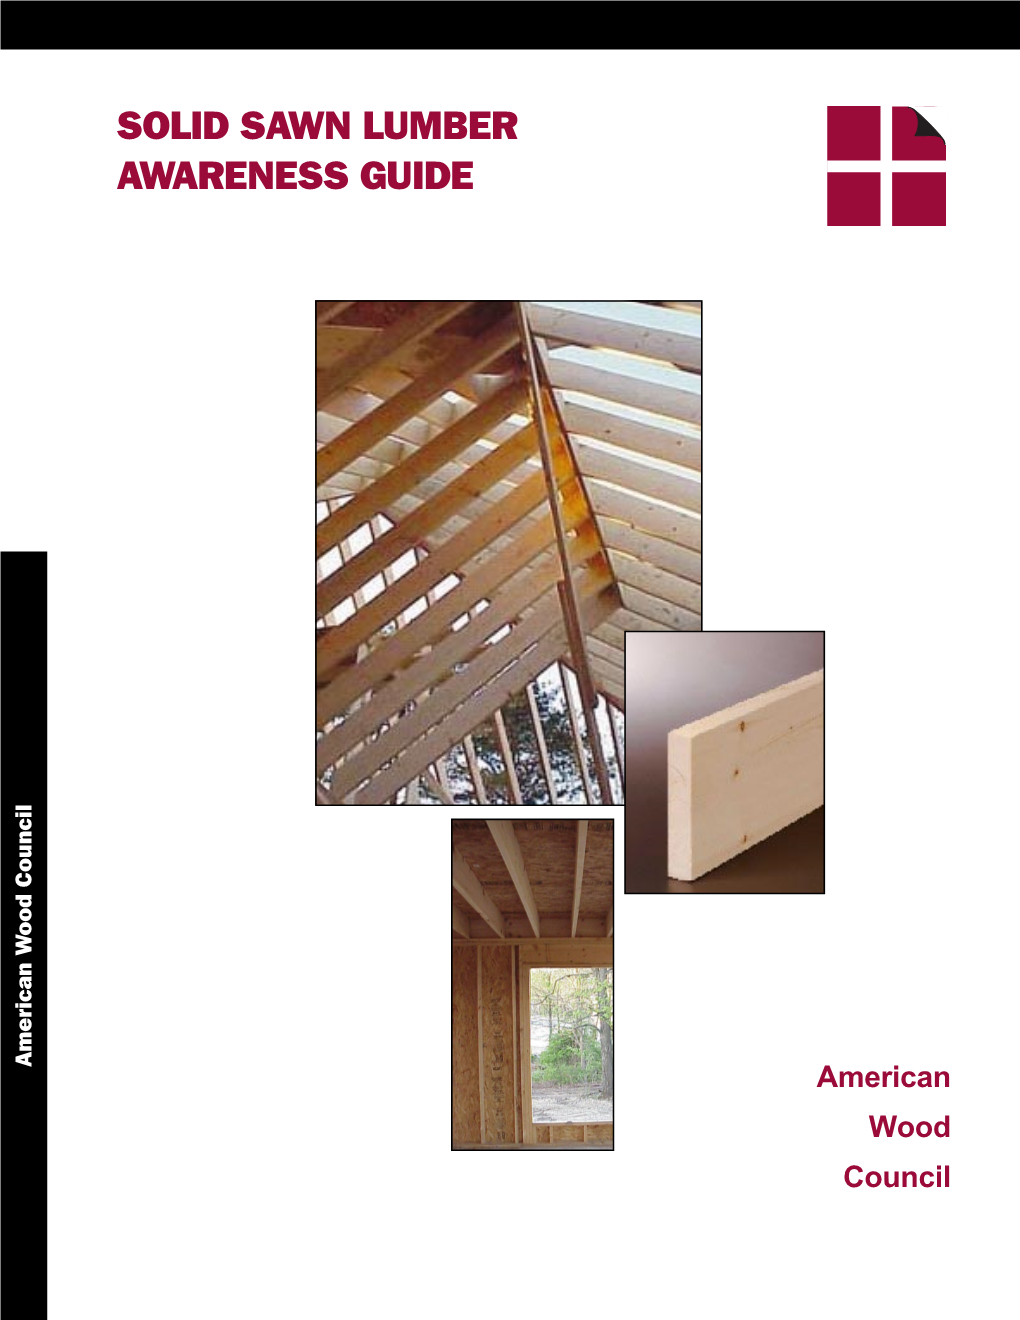 Solid Sawn Lumber Awareness Guide